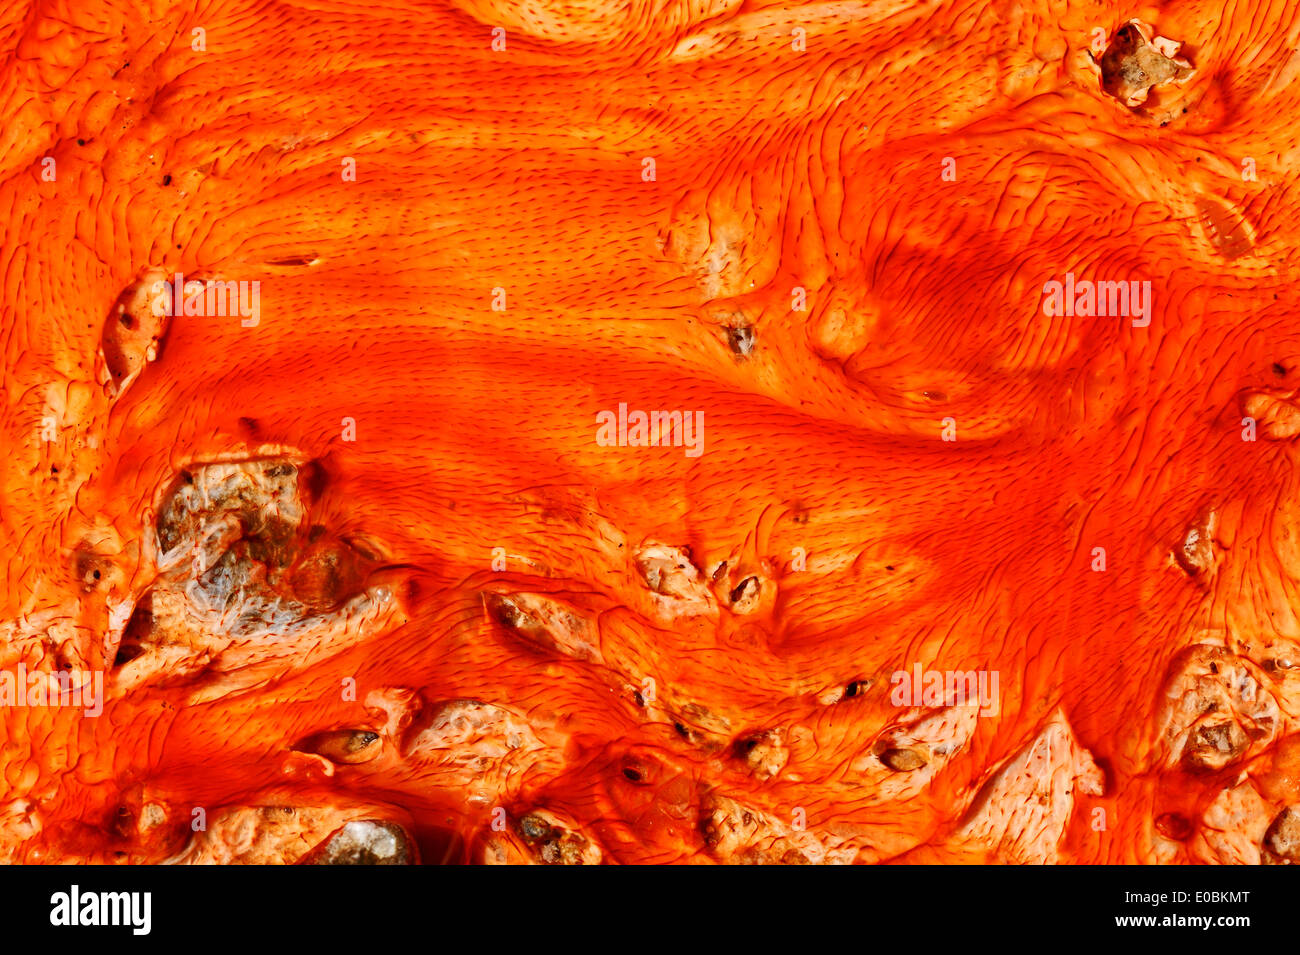 Esteras bacterianas de algas y depósitos minerales en aguas termales, la Cuenca del Géiser Superior, el Parque Nacional Yellowstone, Wyoming, EE.UU. Foto de stock